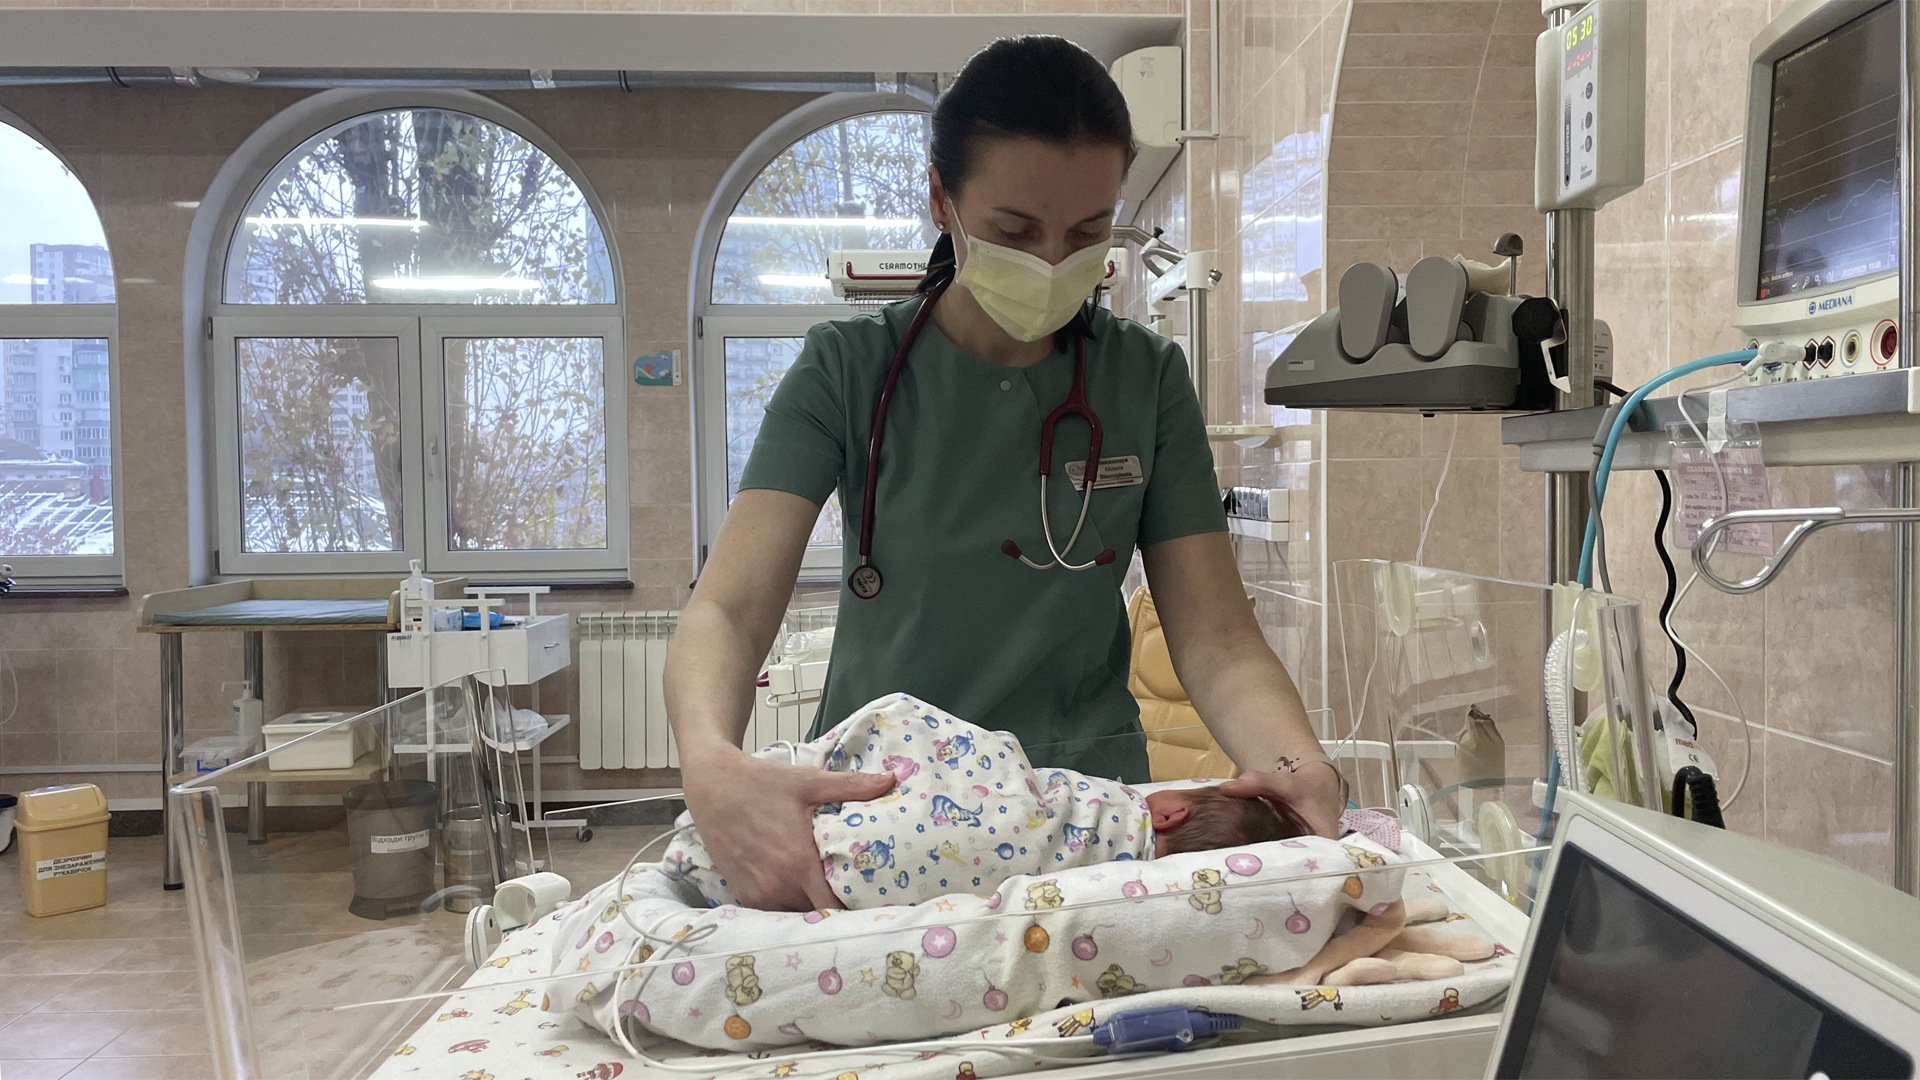 Ärztin Olga Kowaltschuk auf der Frühchen-Station am Bett eines Mädchens das mit 33 Wochen auf die Welt kam.